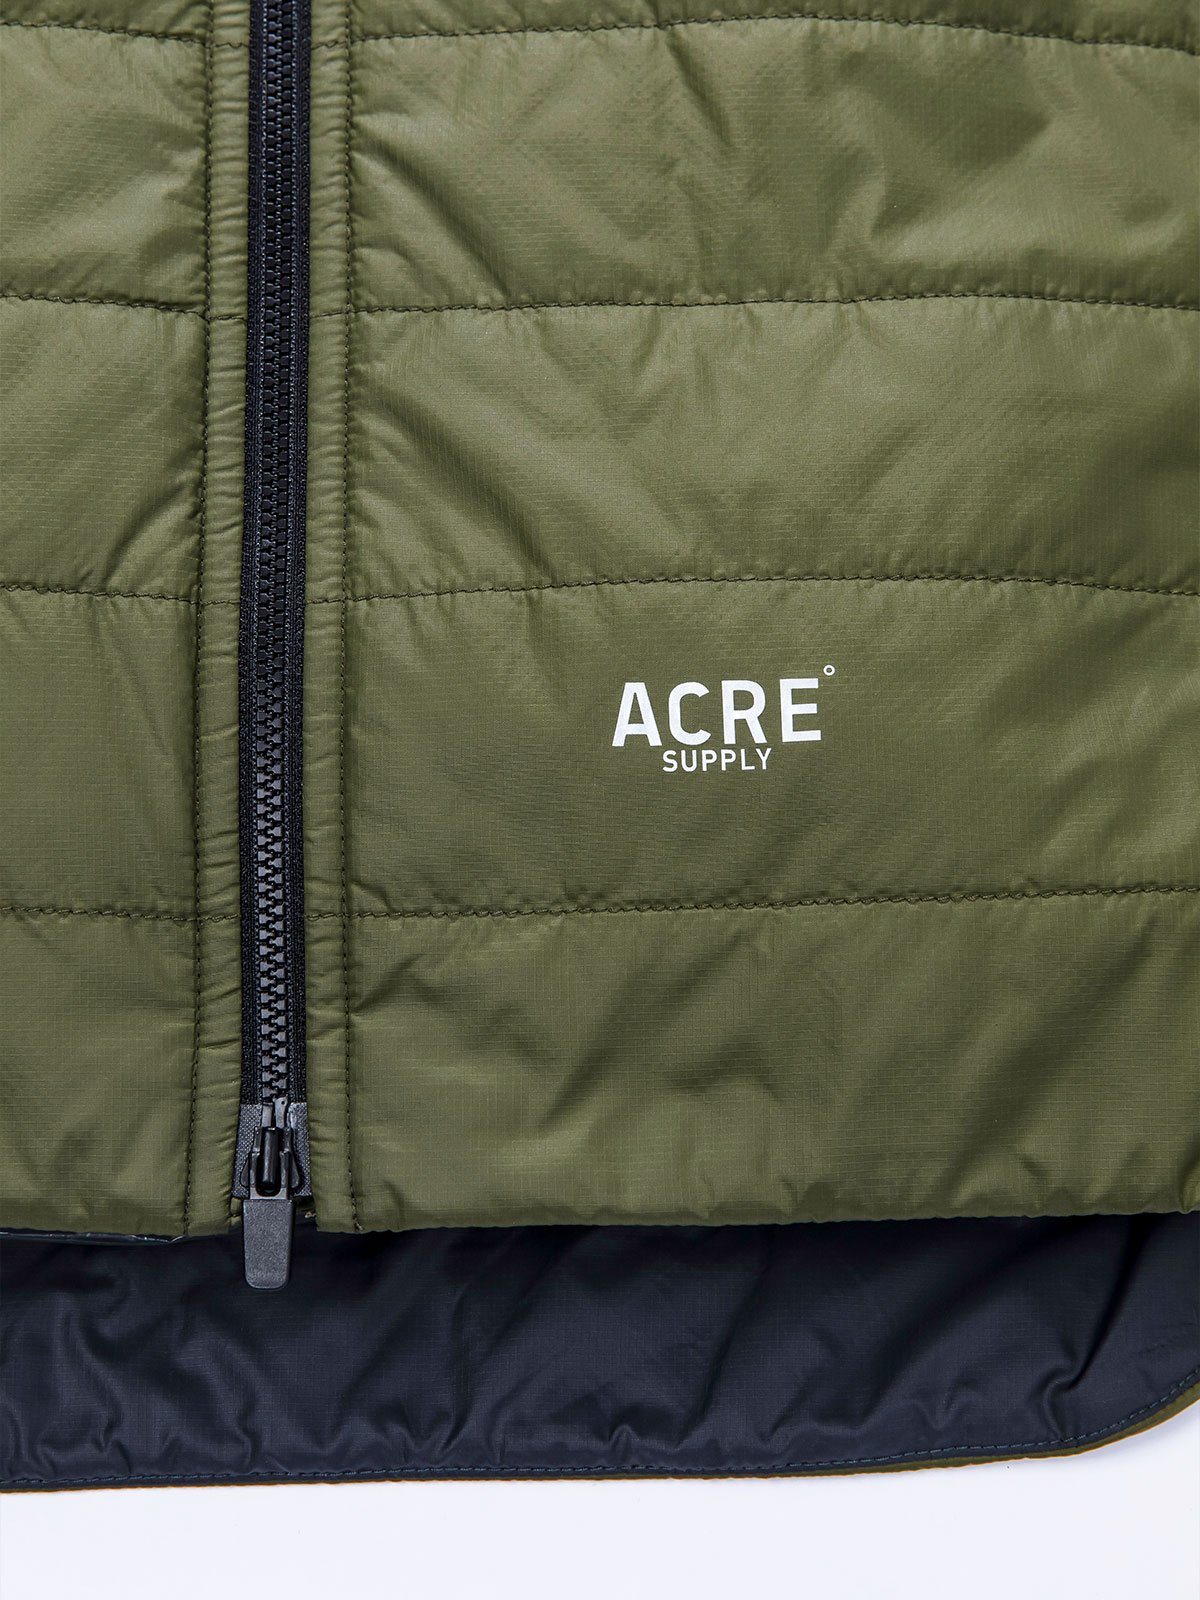 Acre Series Jacket by Mission Workshop - Säänkestävät laukut ja tekniset vaatteet - San Francisco & Los Angeles - Rakennettu kestämään - ikuinen takuu